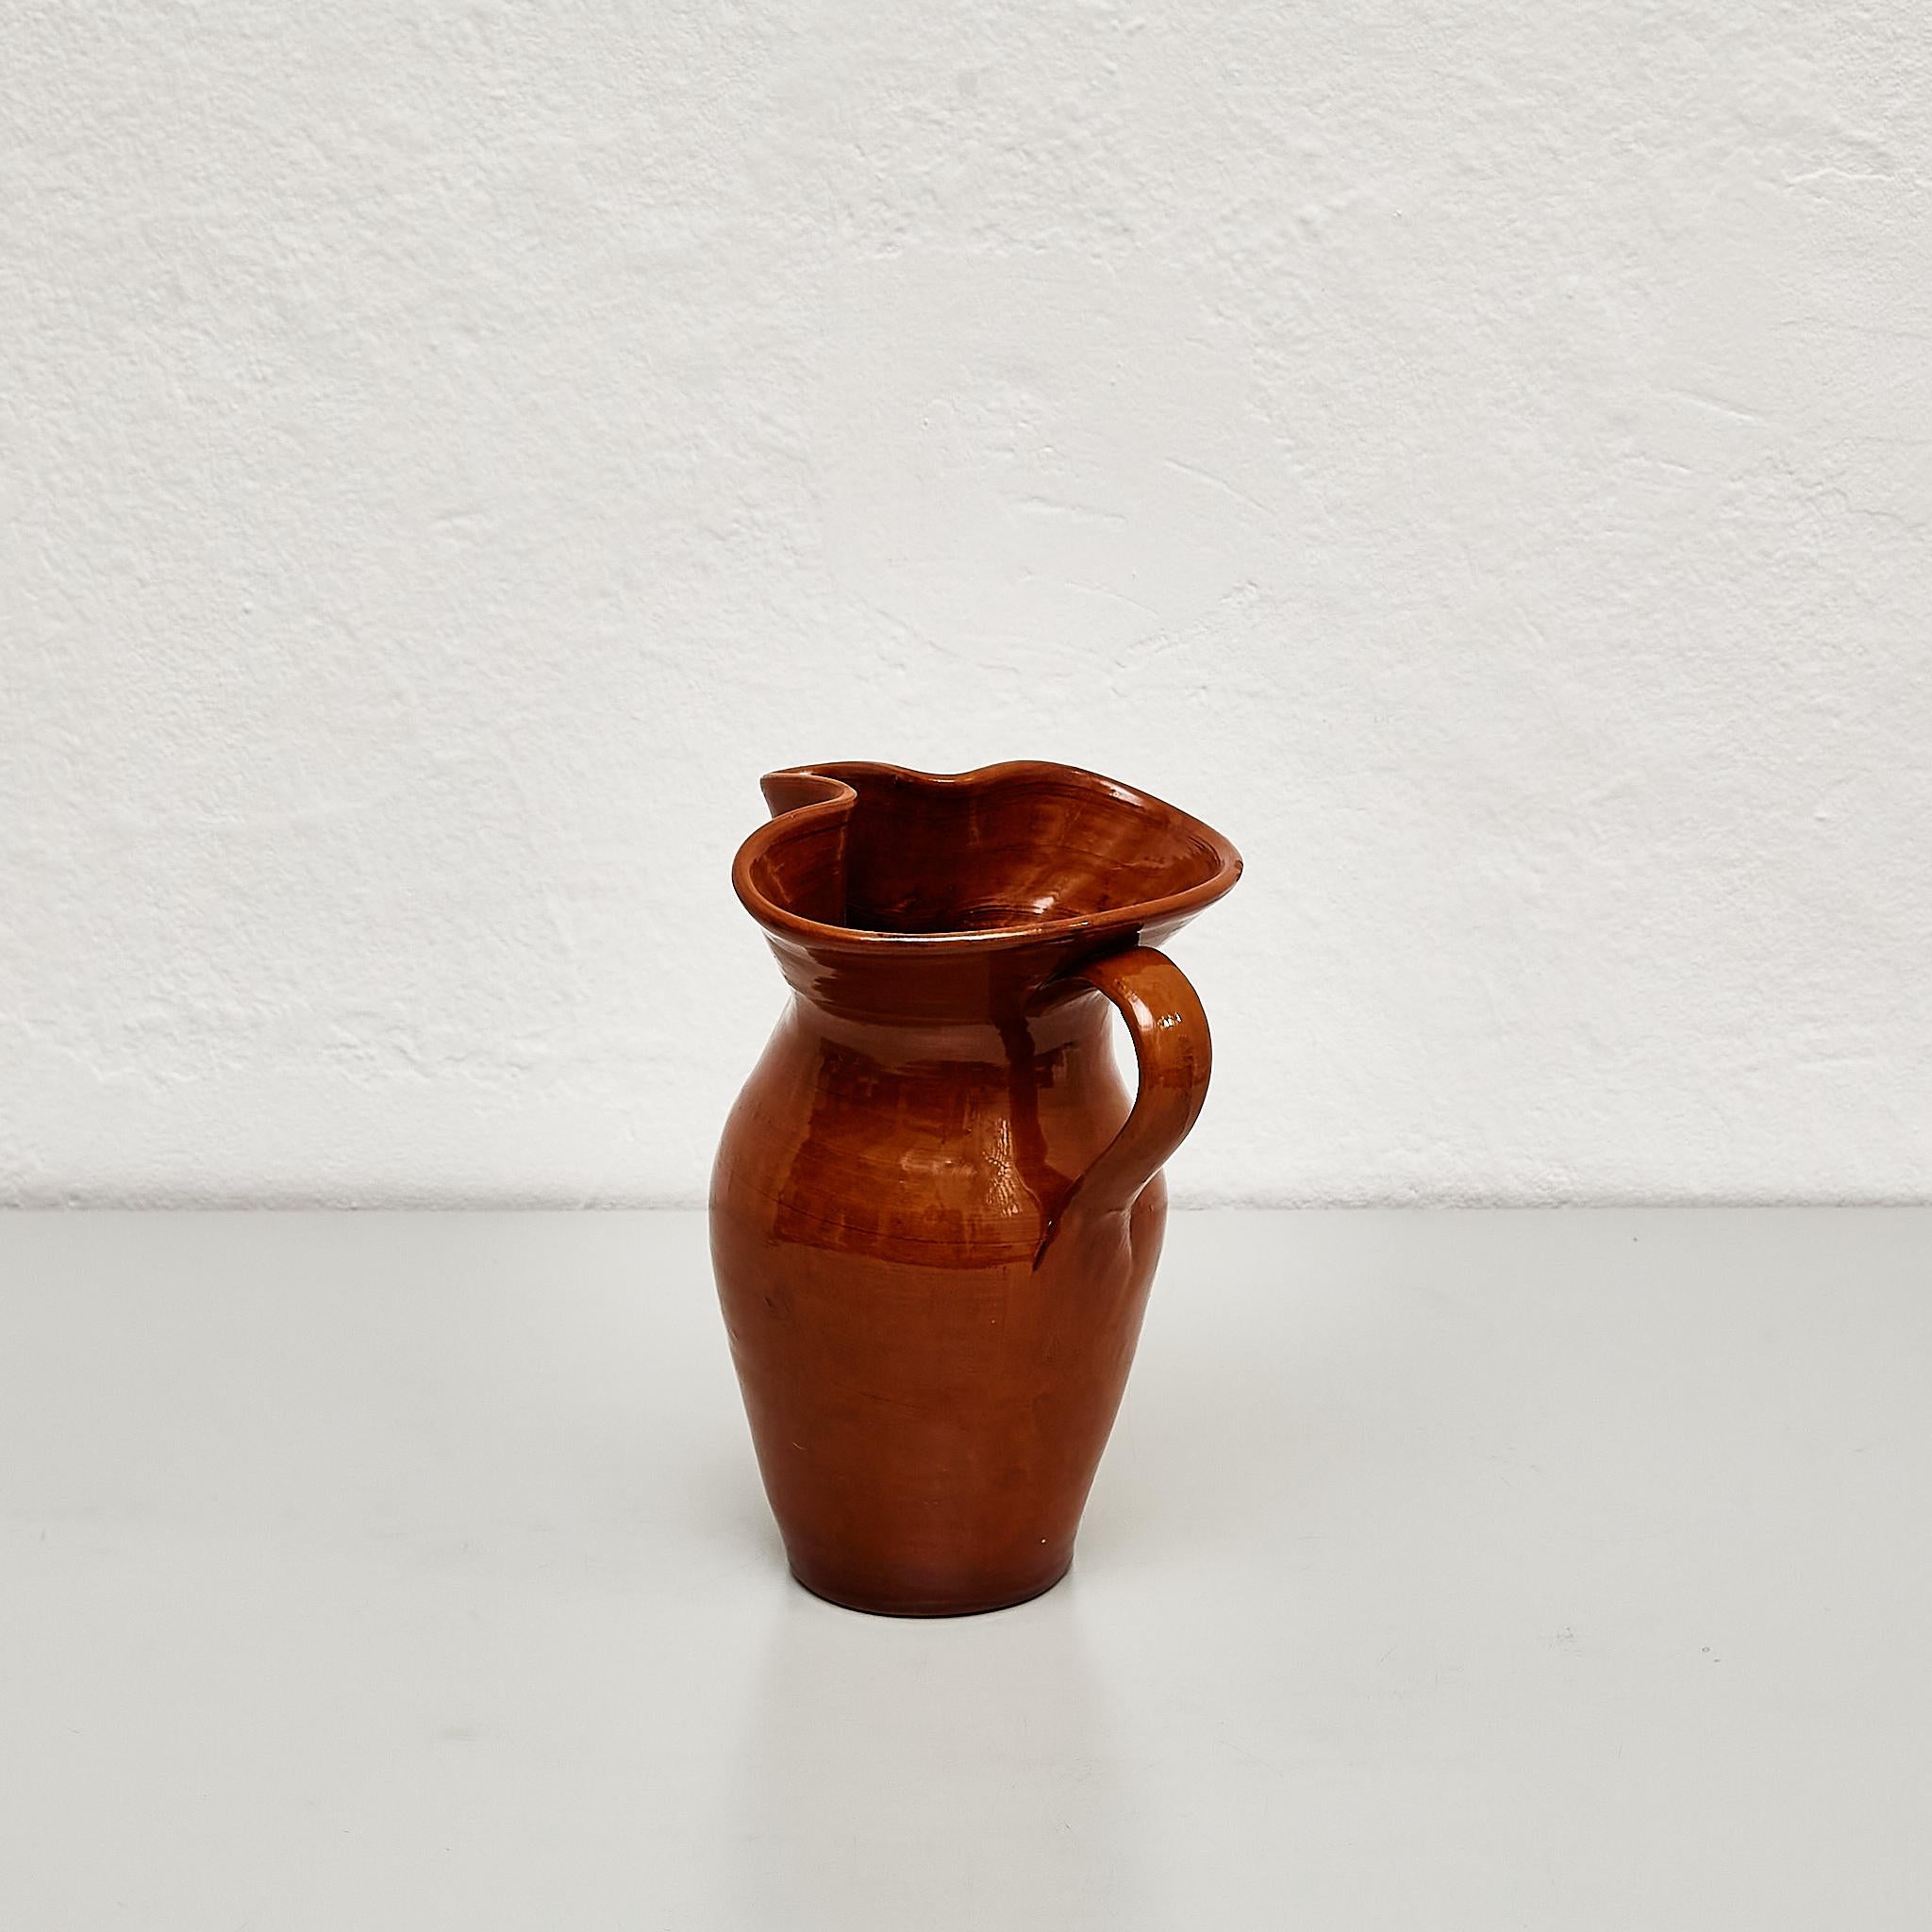 Rustic Mid 20th Century Traditional Spanish Ceramic Vase